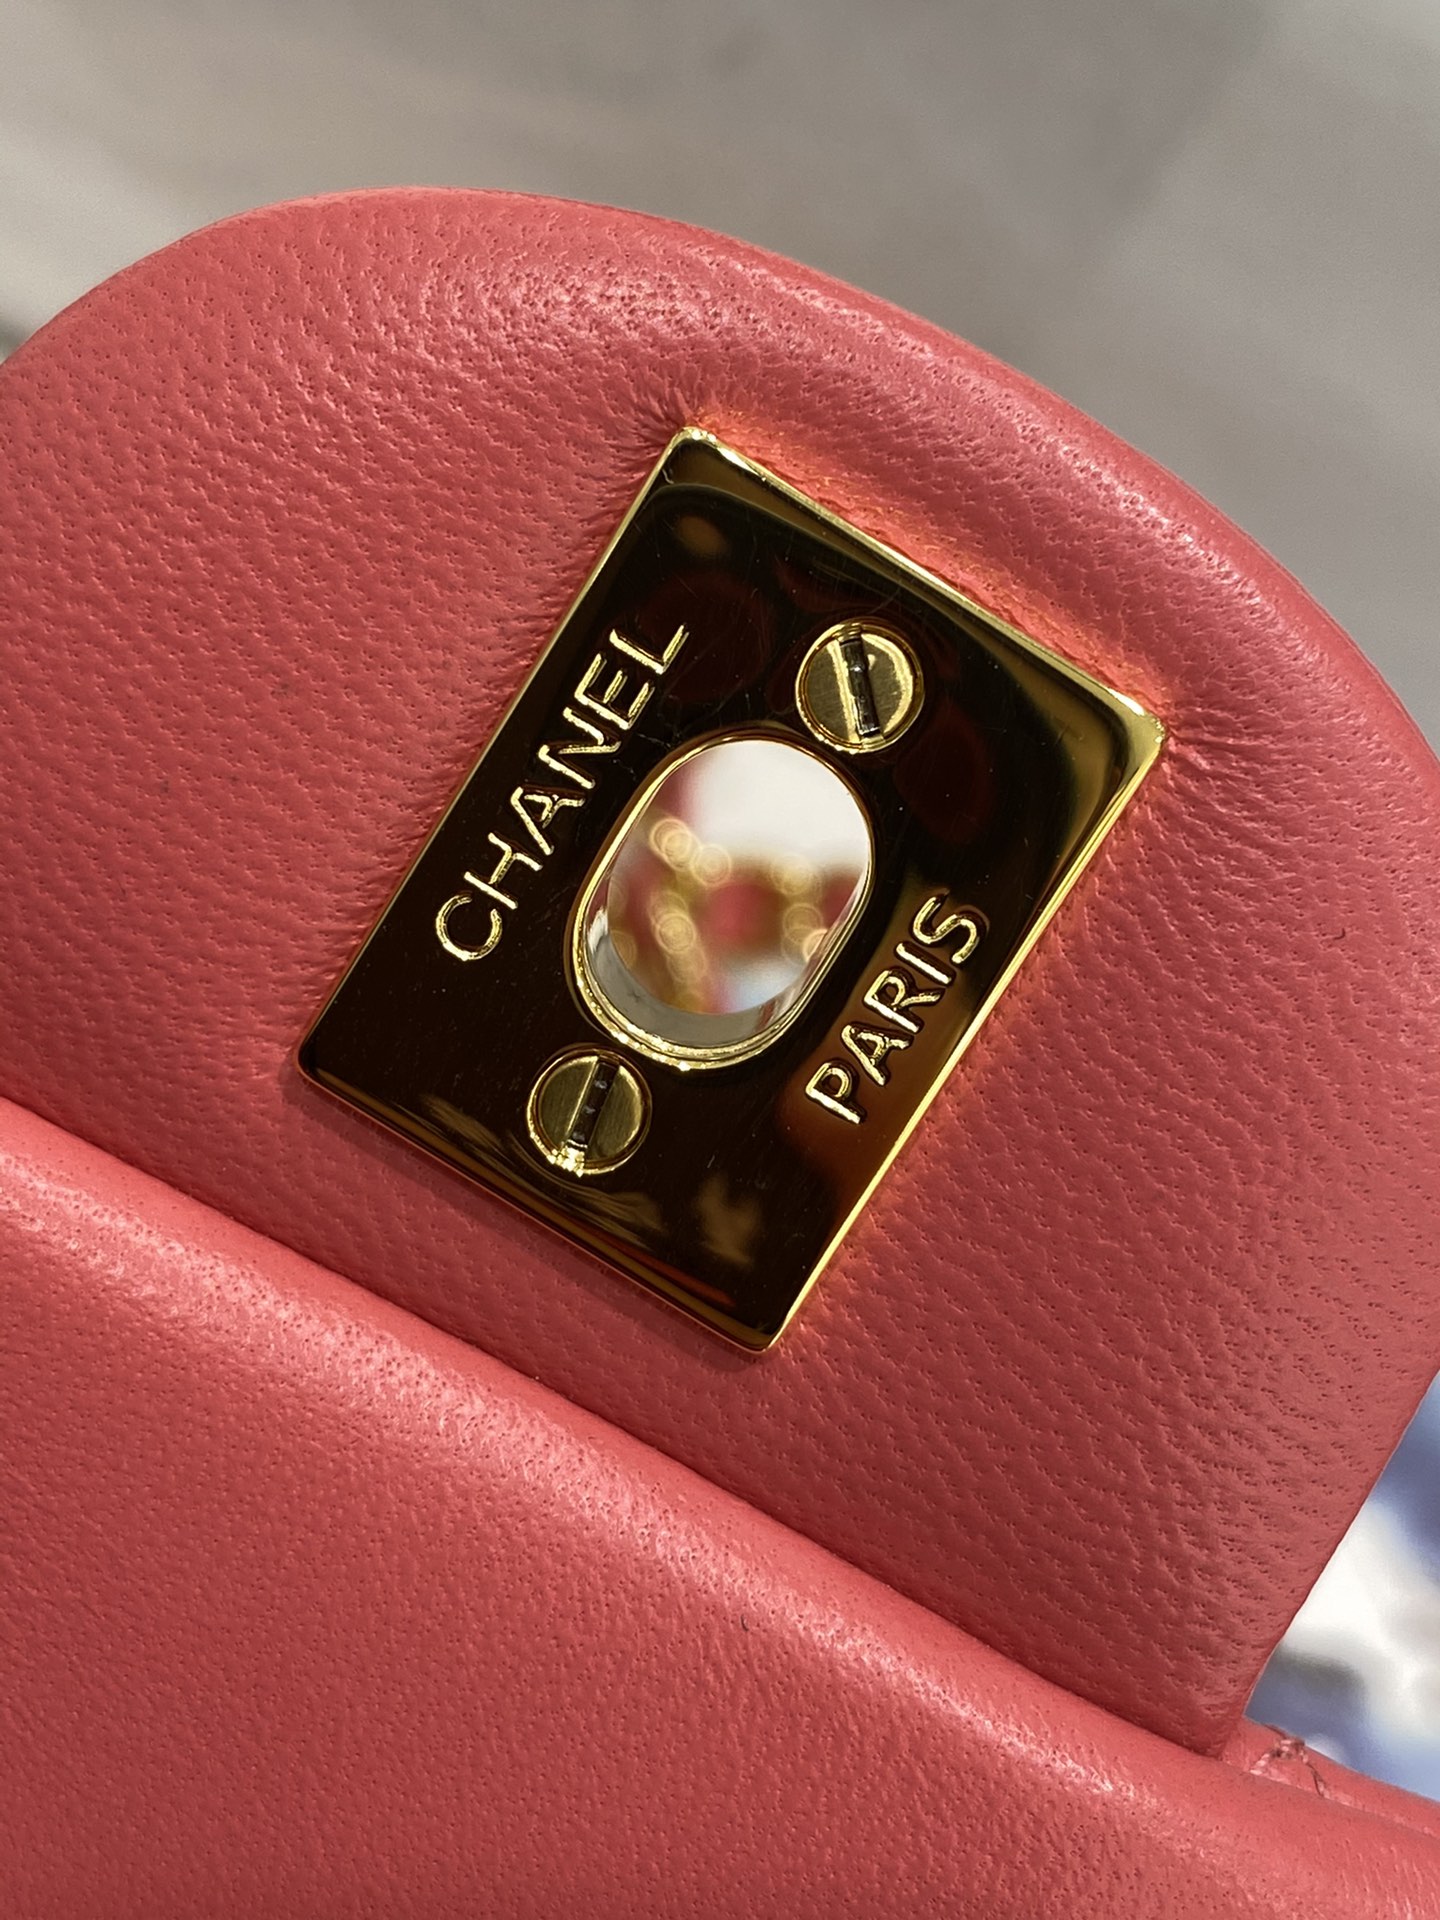 现货  【真品级】Chanel CF 20  原厂bodin joyeux 羔羊皮  经典永远百搭  现货发售，数量不多～  2021新颜色→ 西瓜红～金扣～